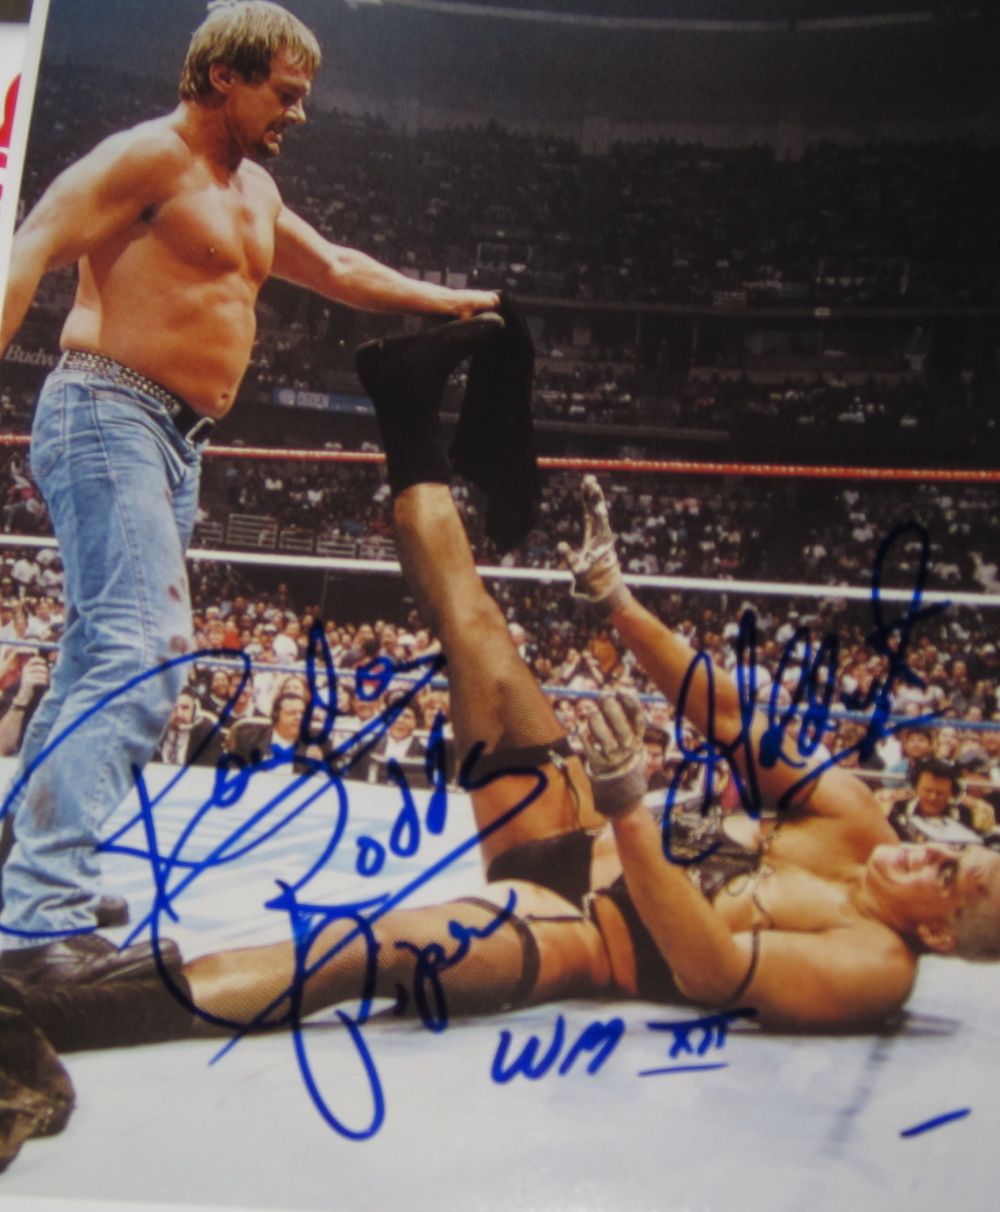 "Rowdy" Roddy Piper & Goldust WWF WWE